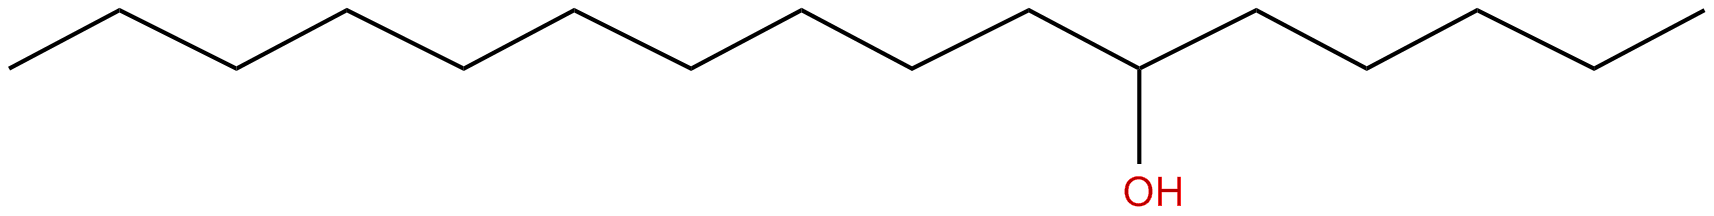 Image of 6-hexadecanol